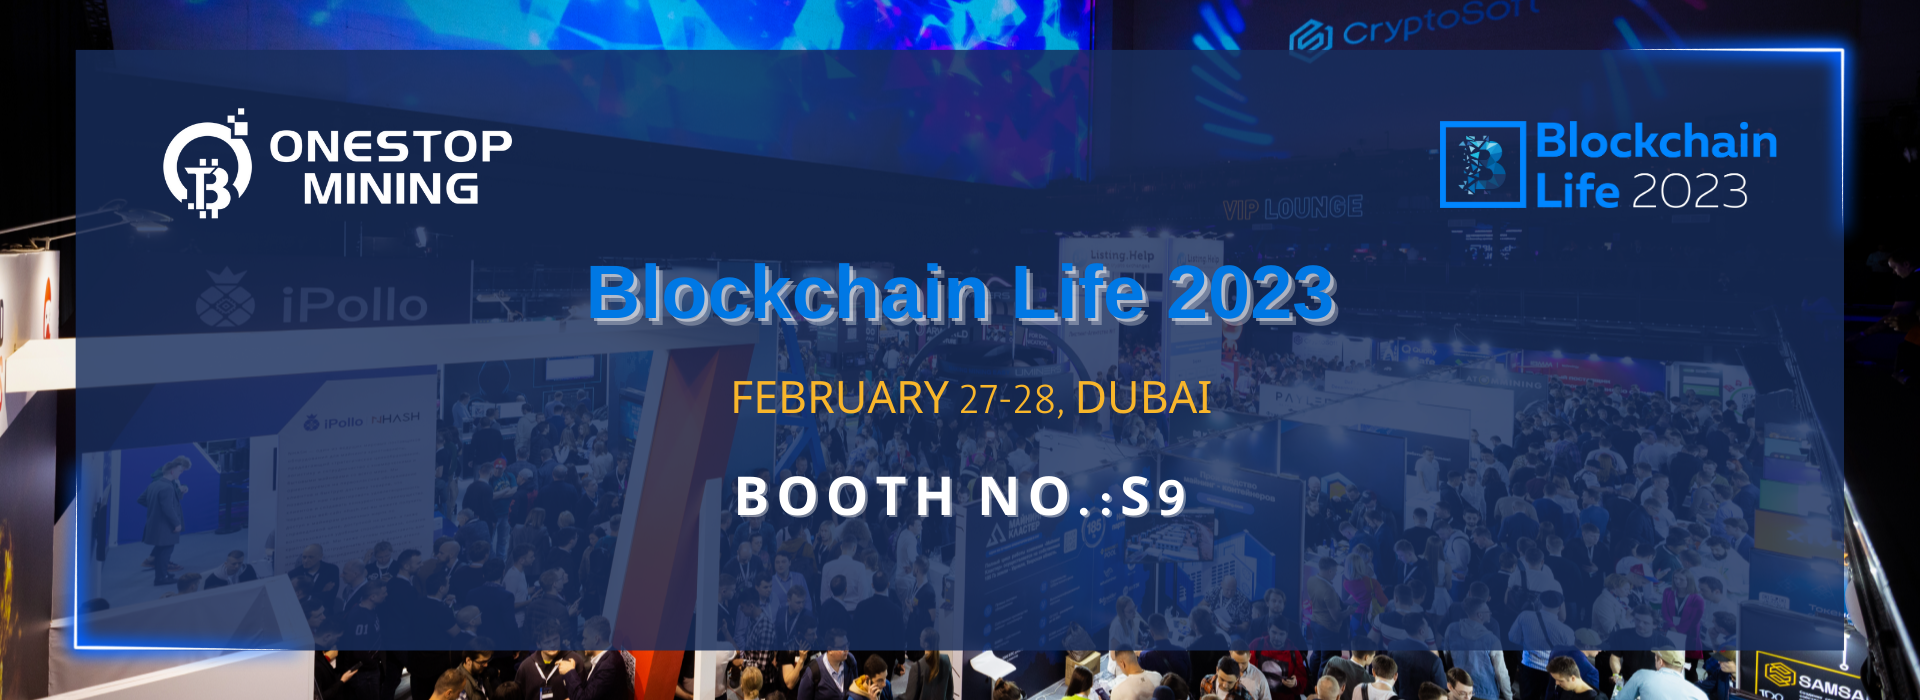 OnestopMining примет участие в Blockchain Life 2023 в Дубае